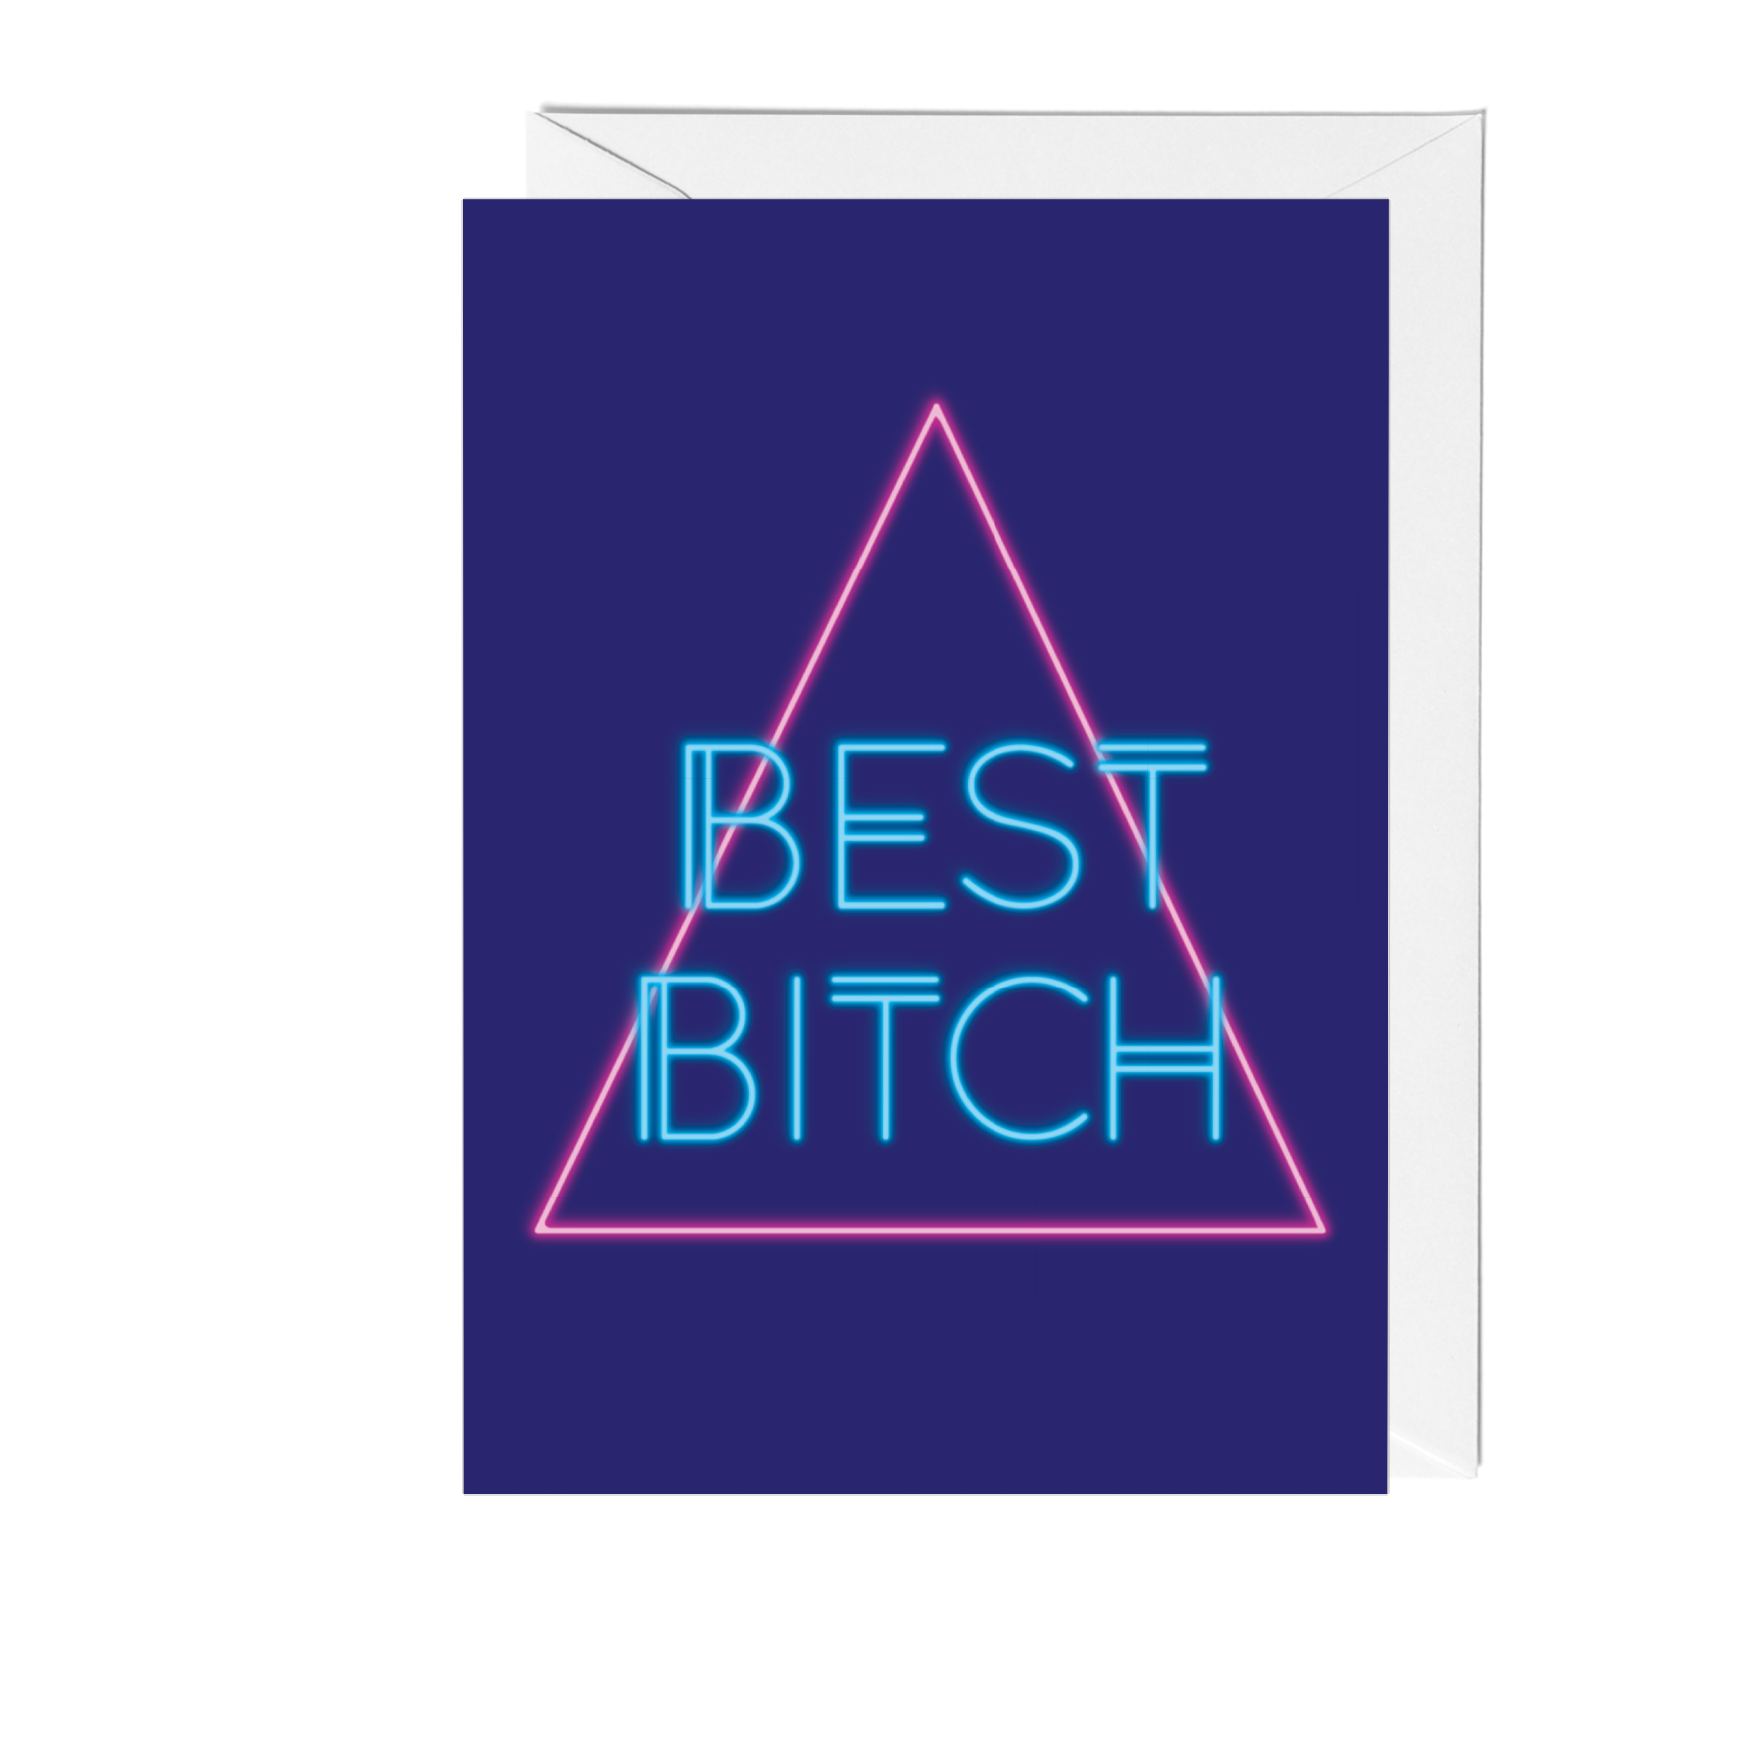 Best Bitch Birthday Card